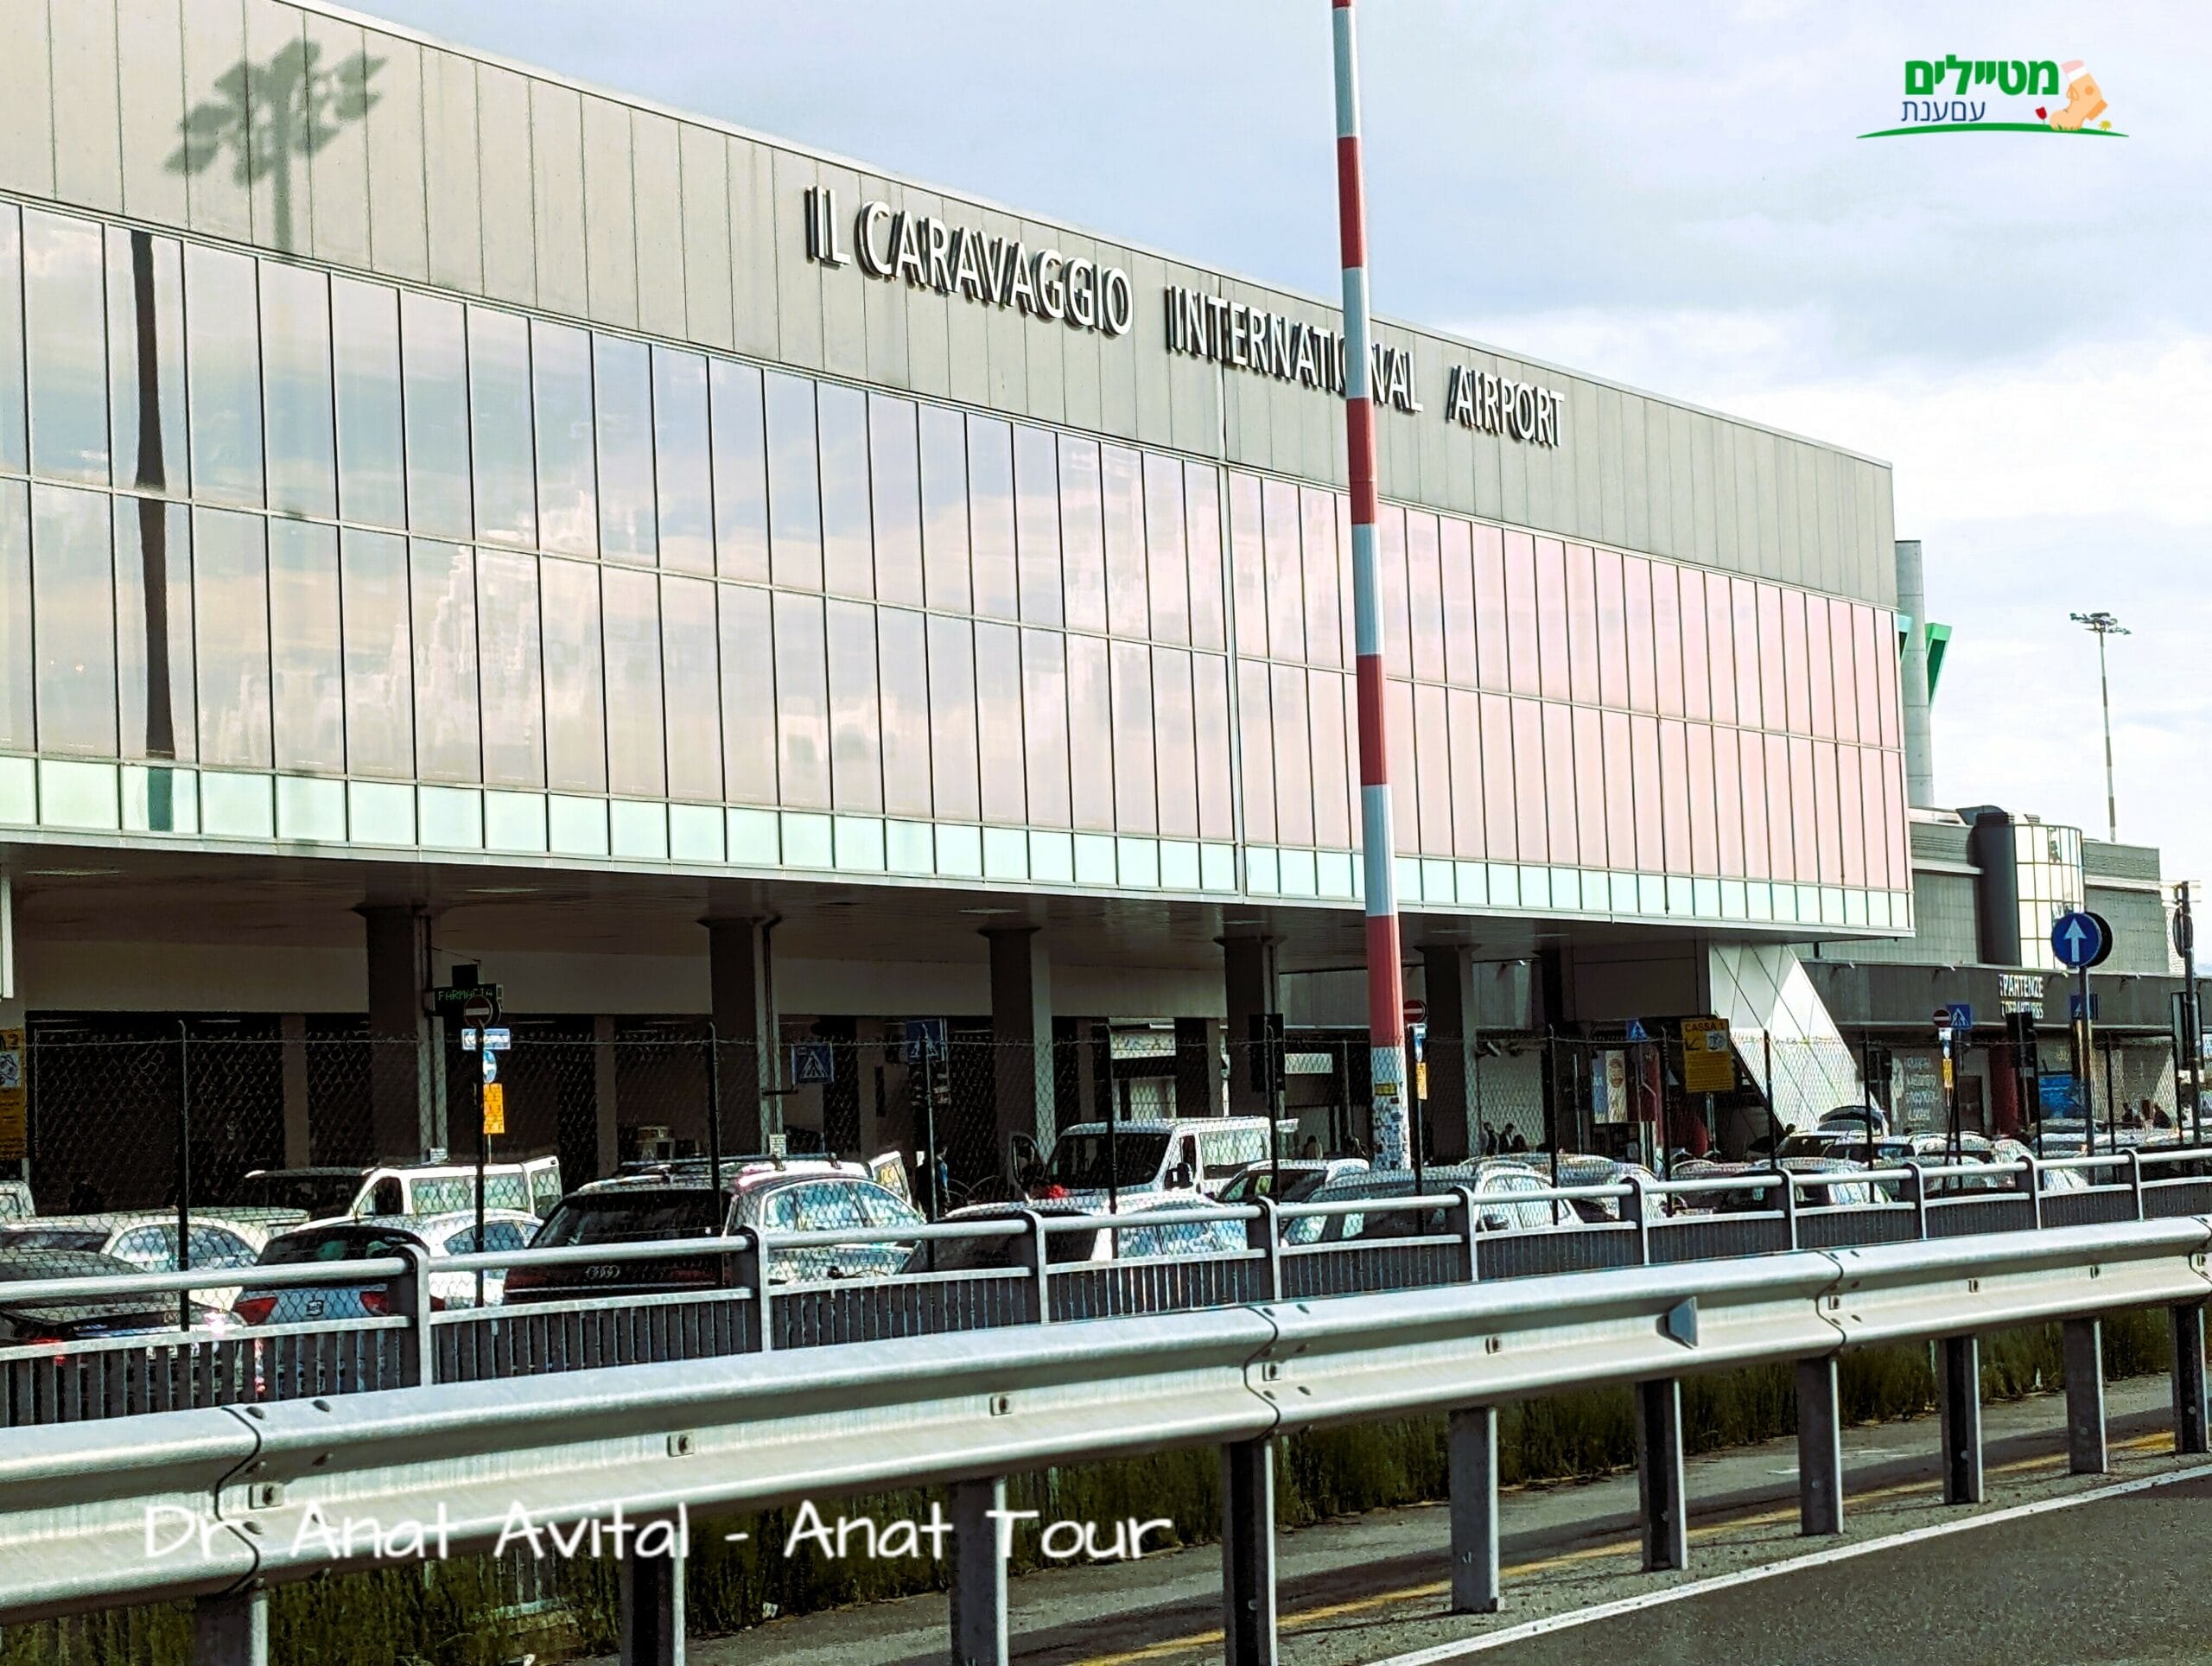 נמל תעופה אוריו אל סריו ברגמו Aeroporto di Bergamo - Orio al Serio, איטליהף צילום: ד"ר ענת אביטל